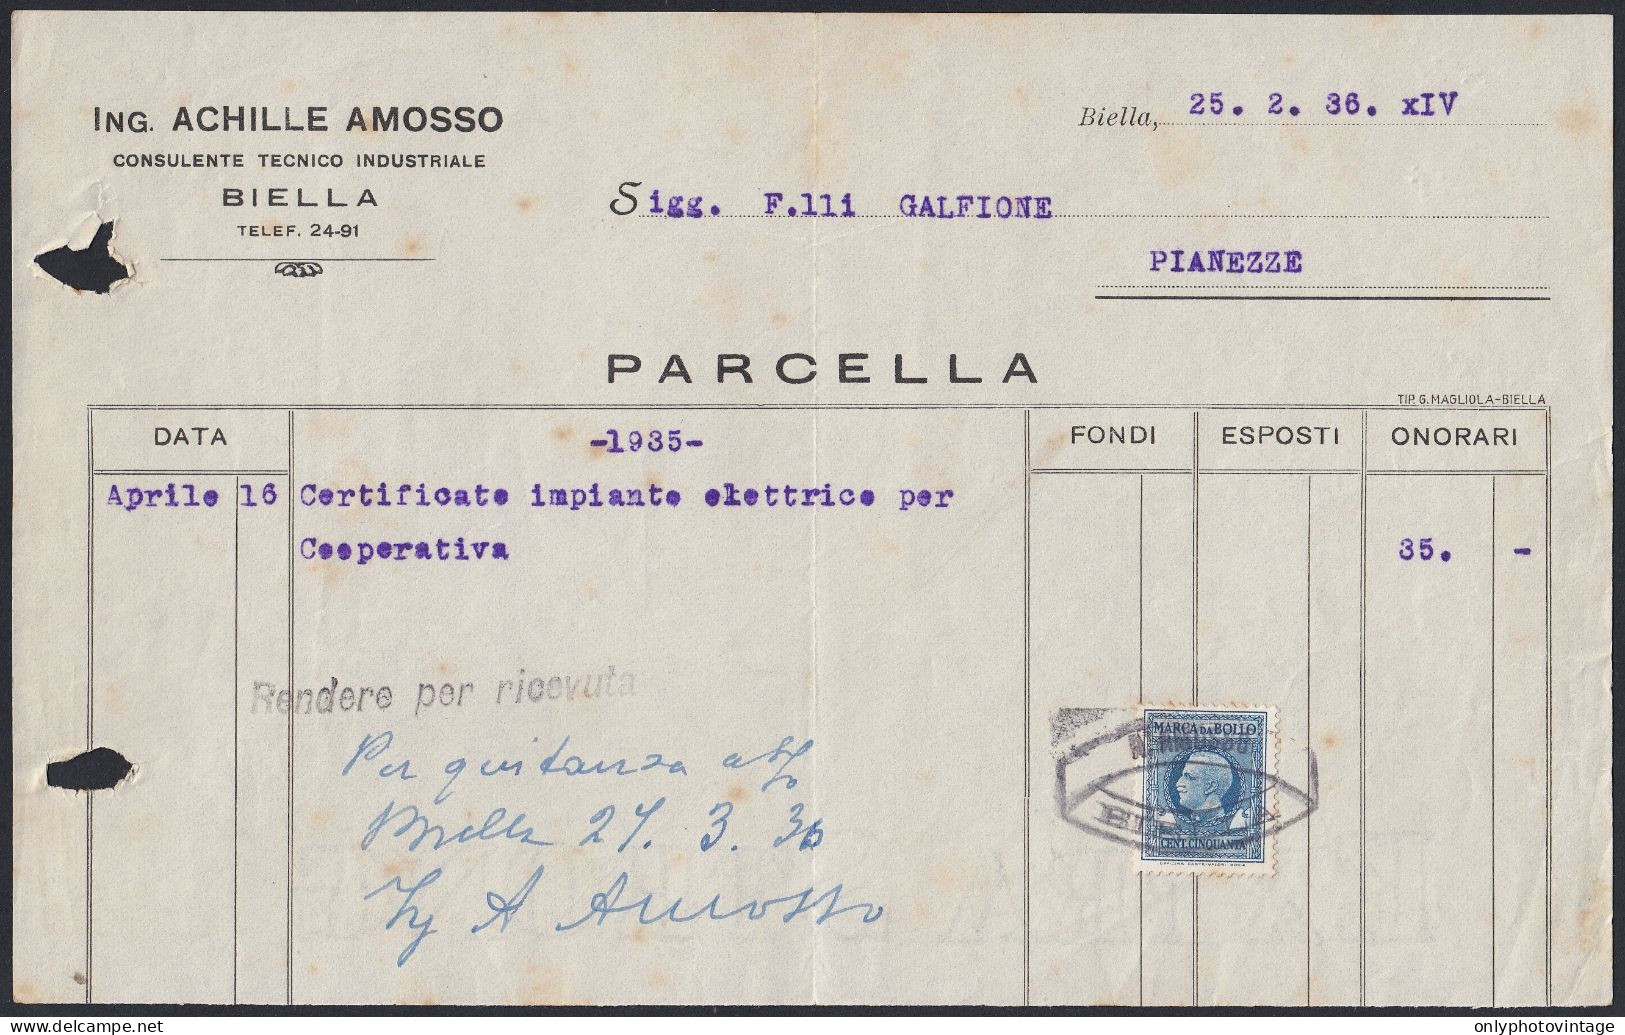 Biella 1936 - Ing. Achille Amosso - Consulente Tecnico Industriale - Italia